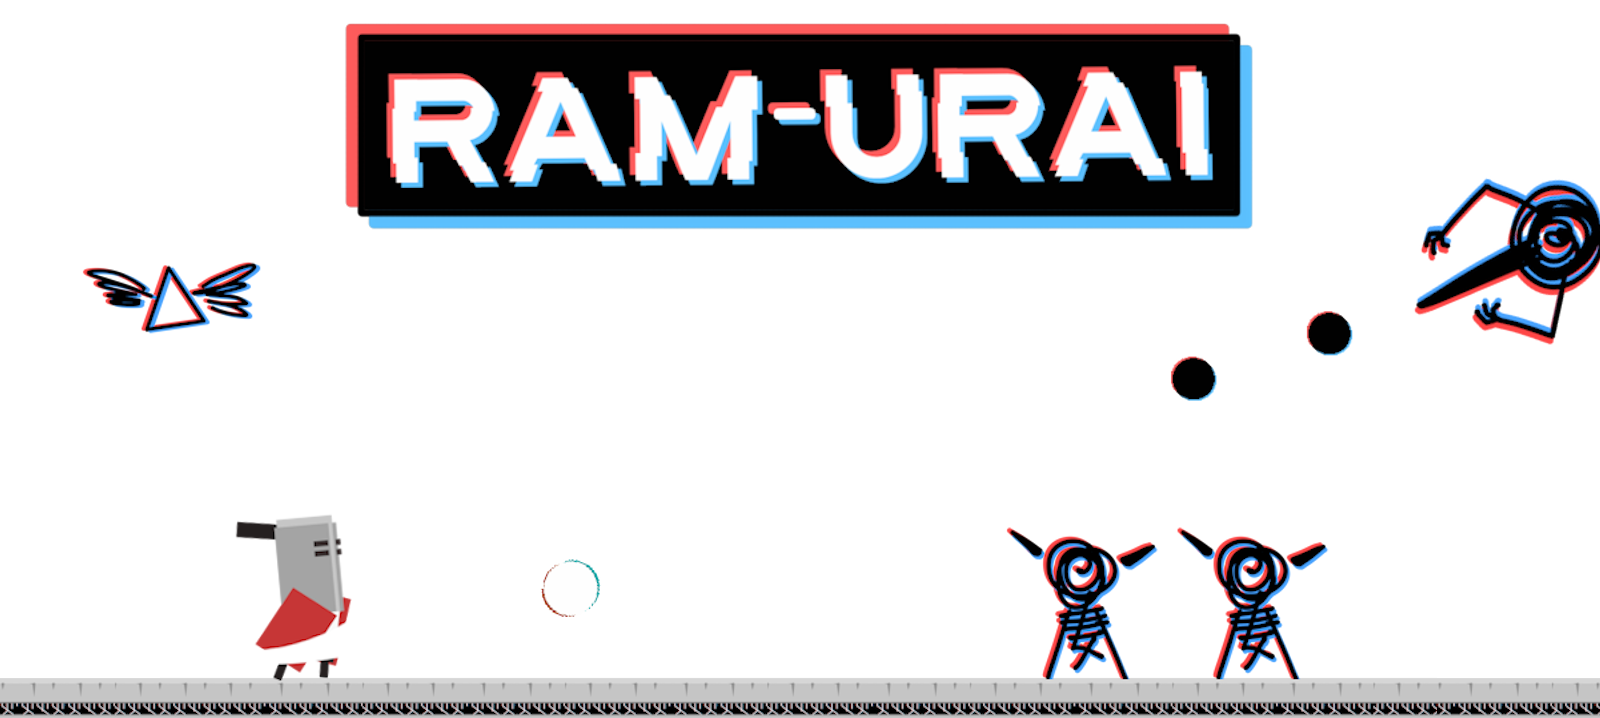 Ram-Urai